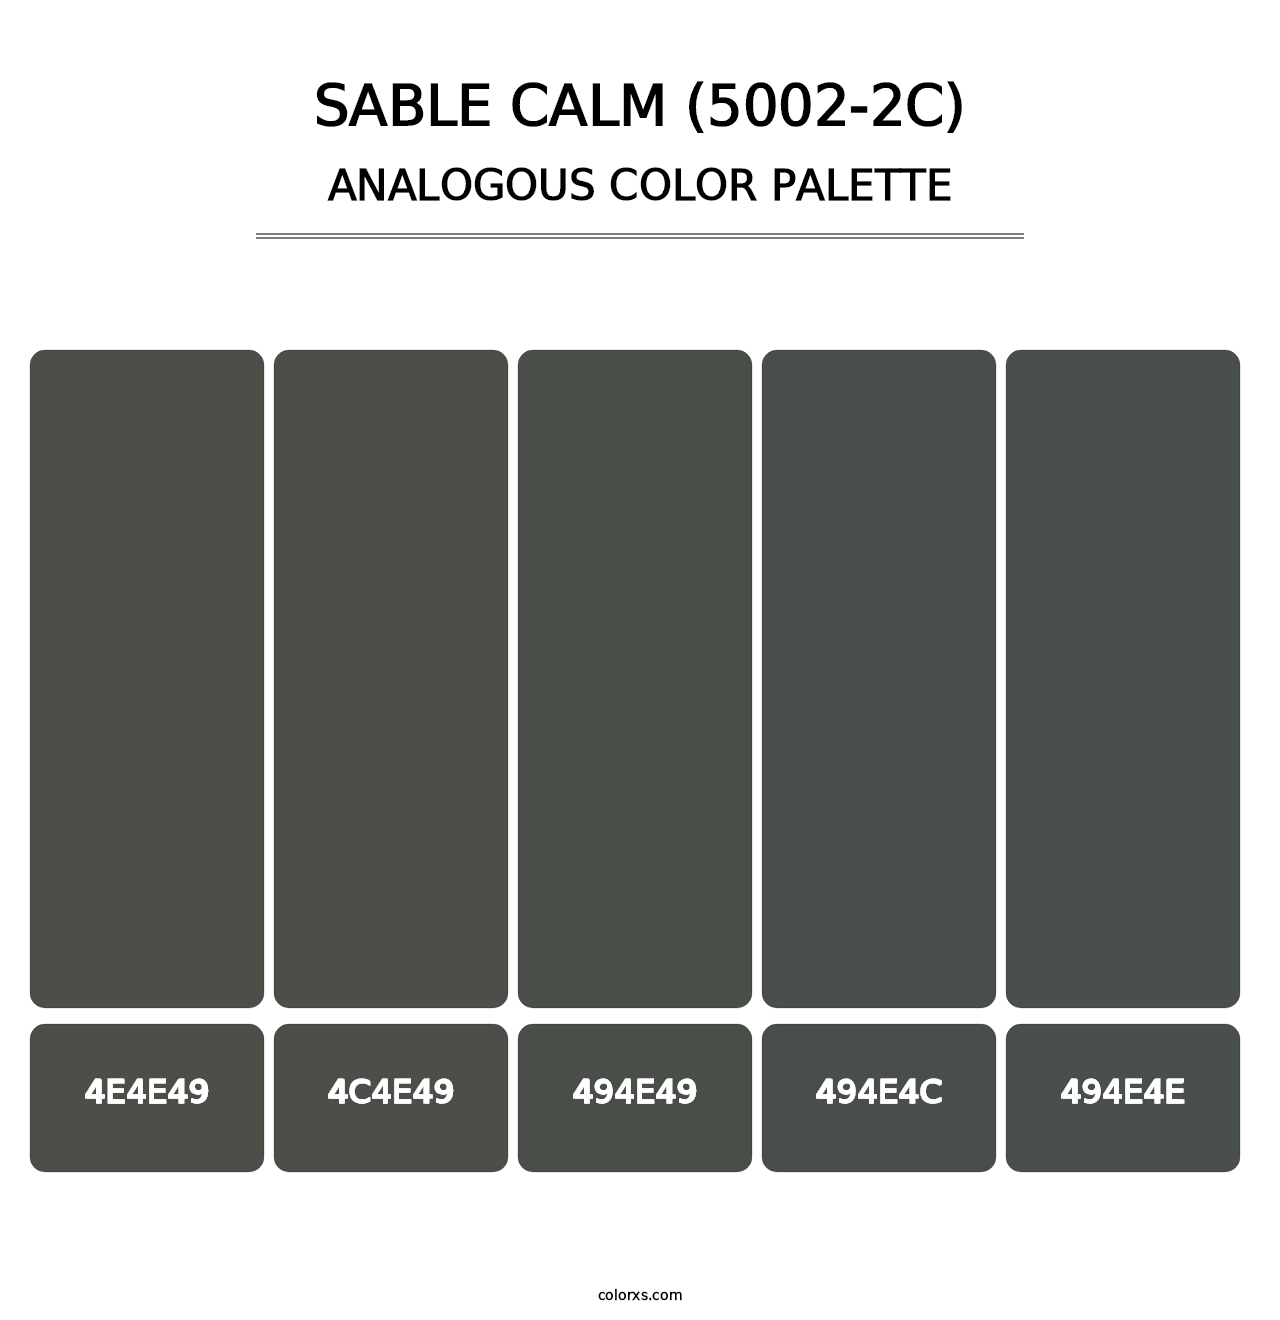 Sable Calm (5002-2C) - Analogous Color Palette